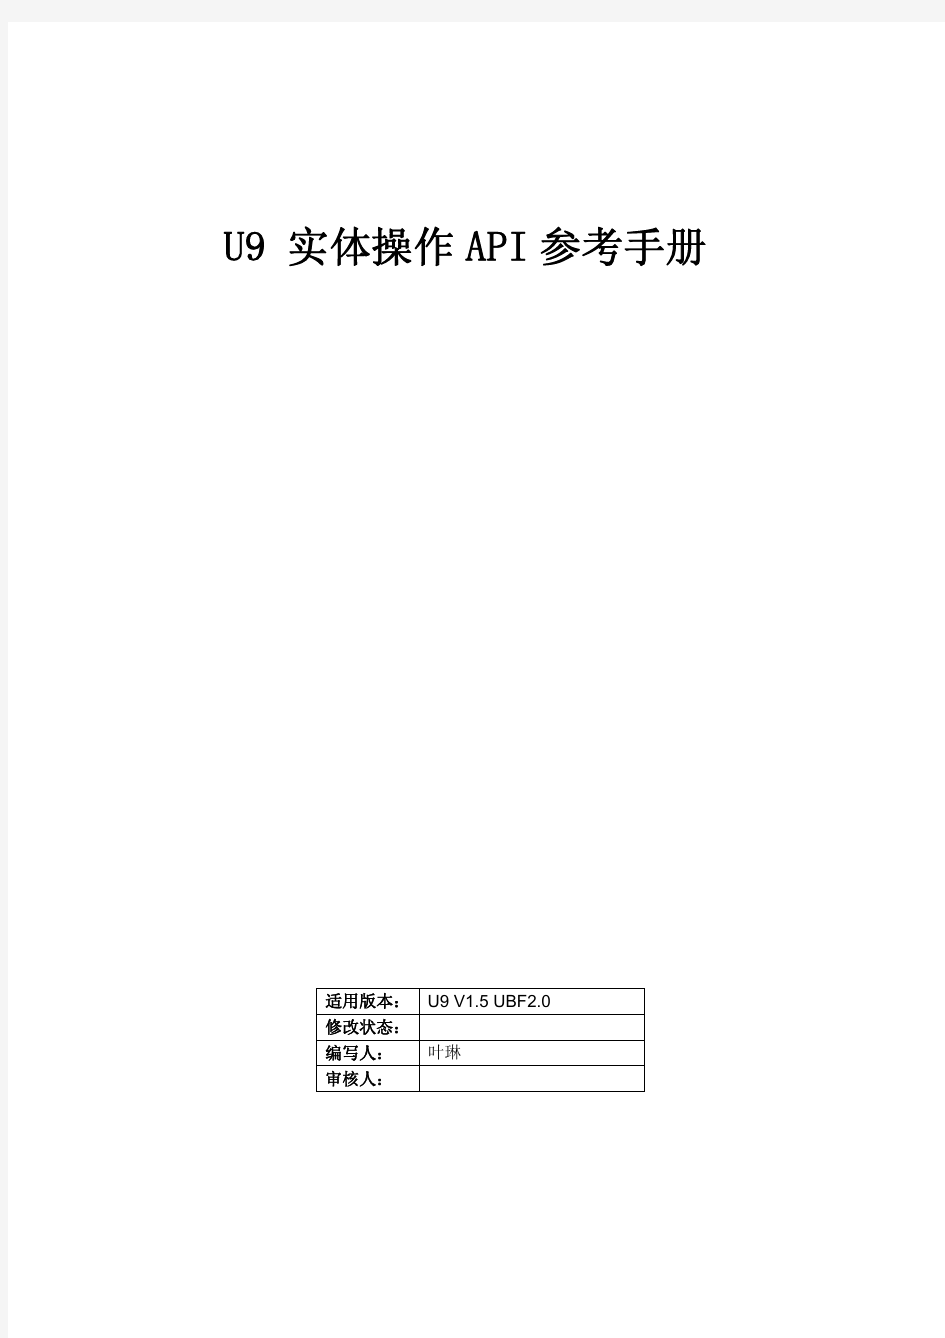 U9研发体系(实体操作API参考手册)